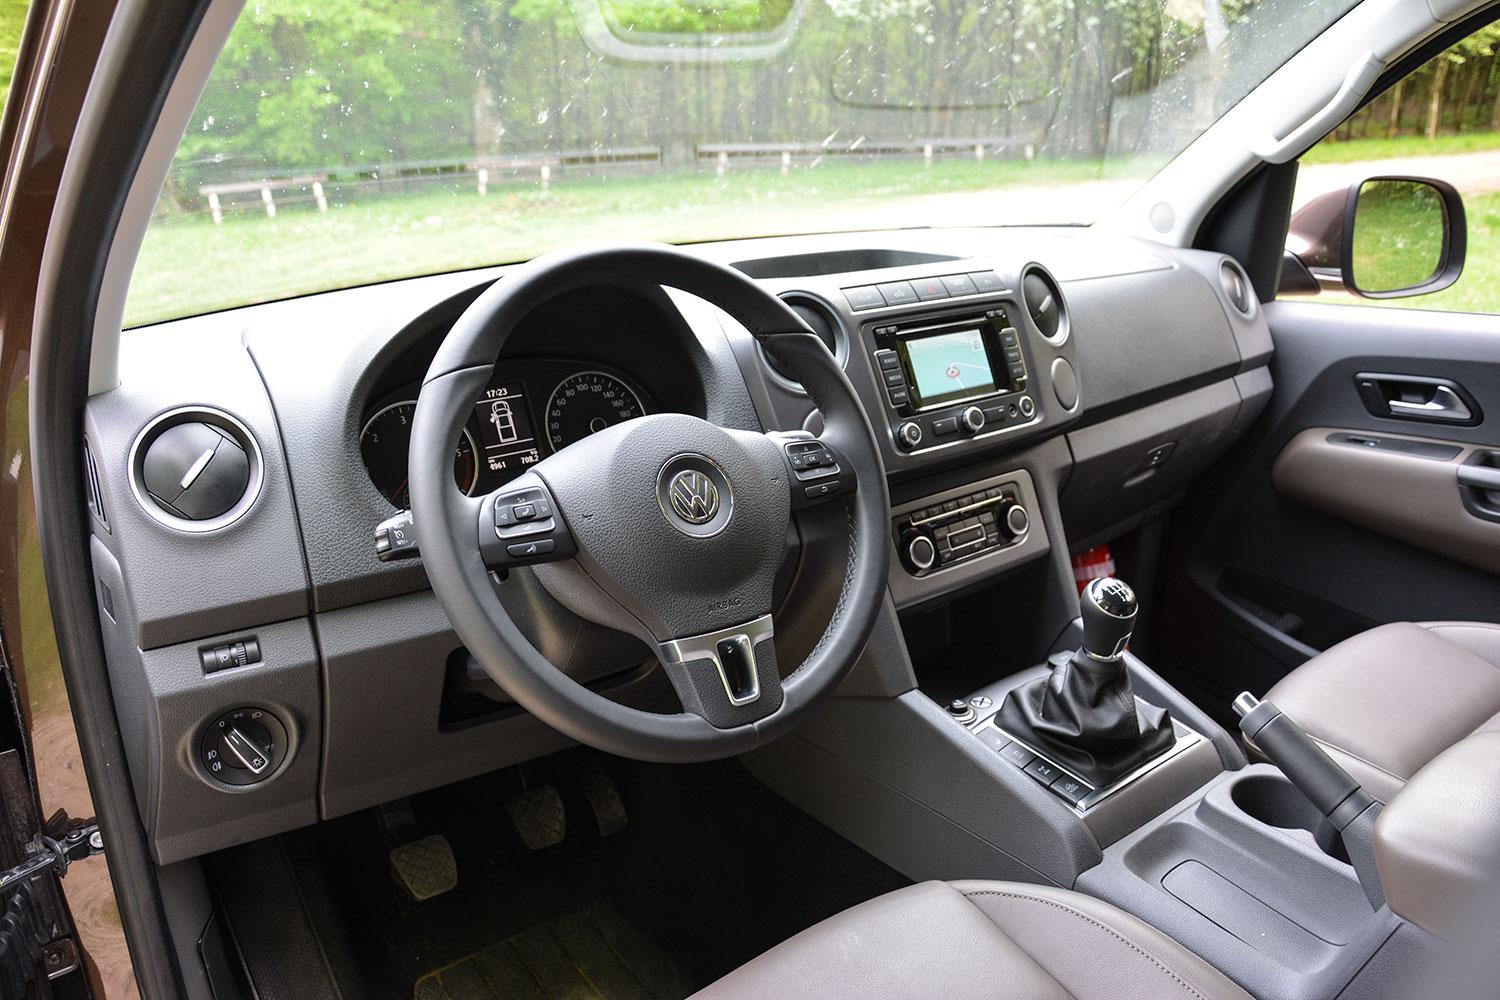 https://www.digitaltrends.com/wp-content/uploads/2015/06/2016-Volkswagen-Amarok-steering-wheel-angle.jpg?fit=1500%2C1000&p=1